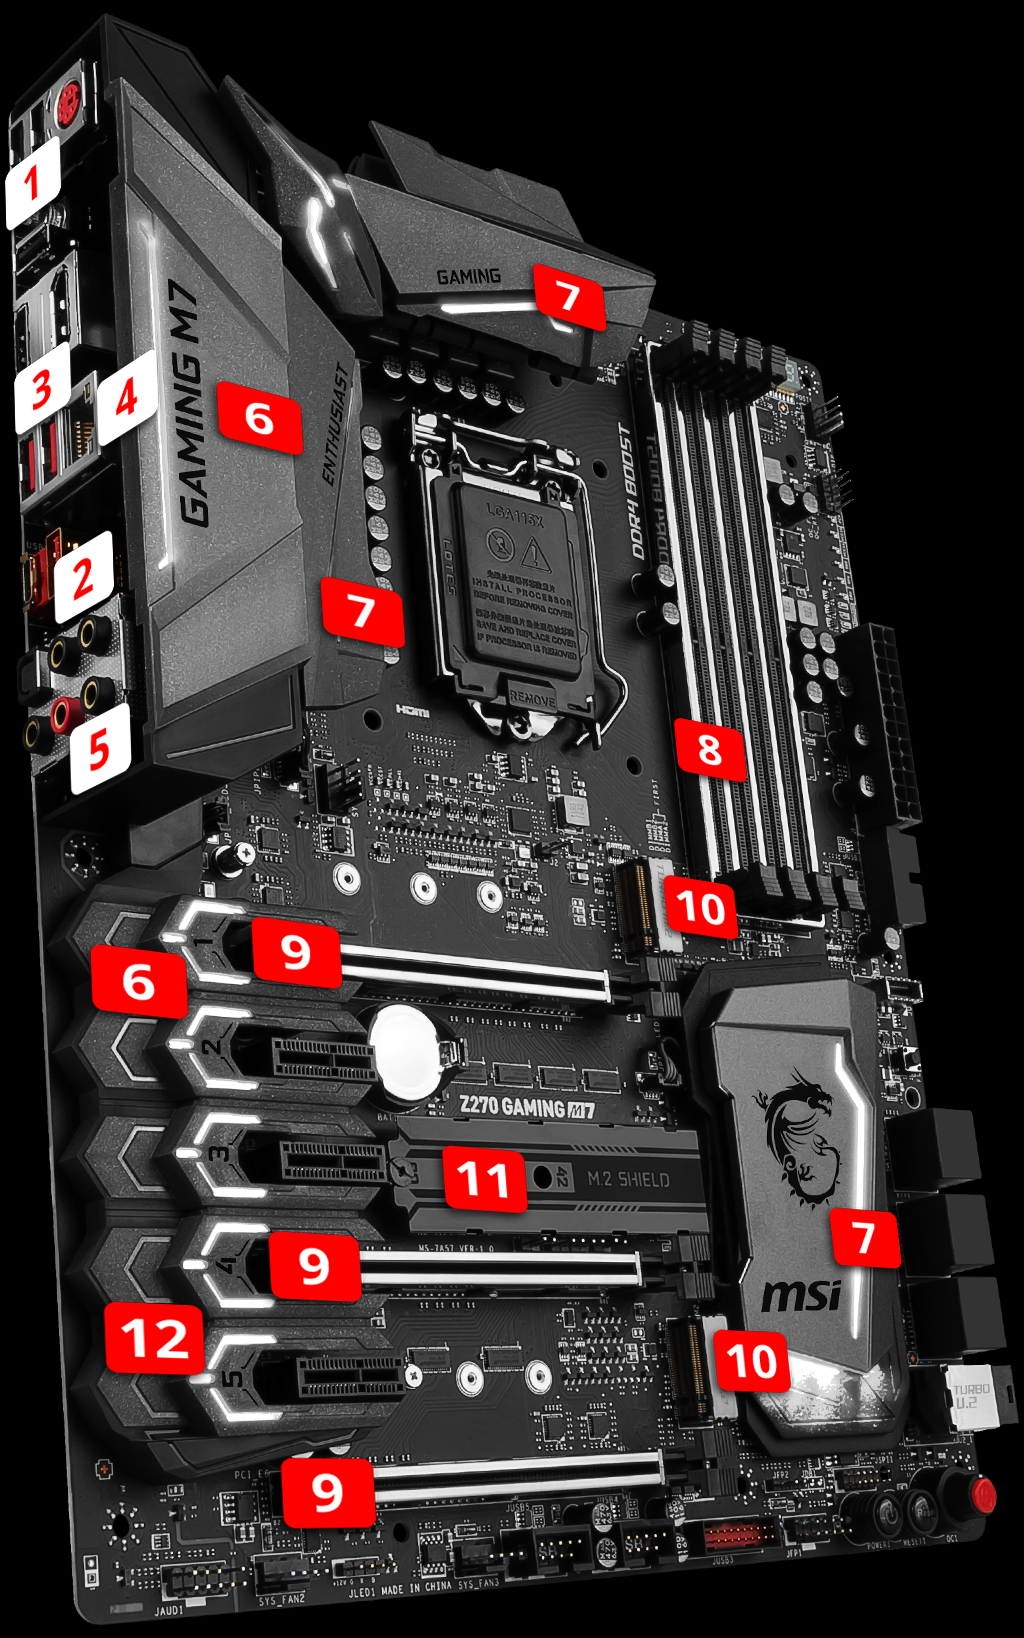 MSI Z270 Gaming M7 LGA1151 ATX Motherboard